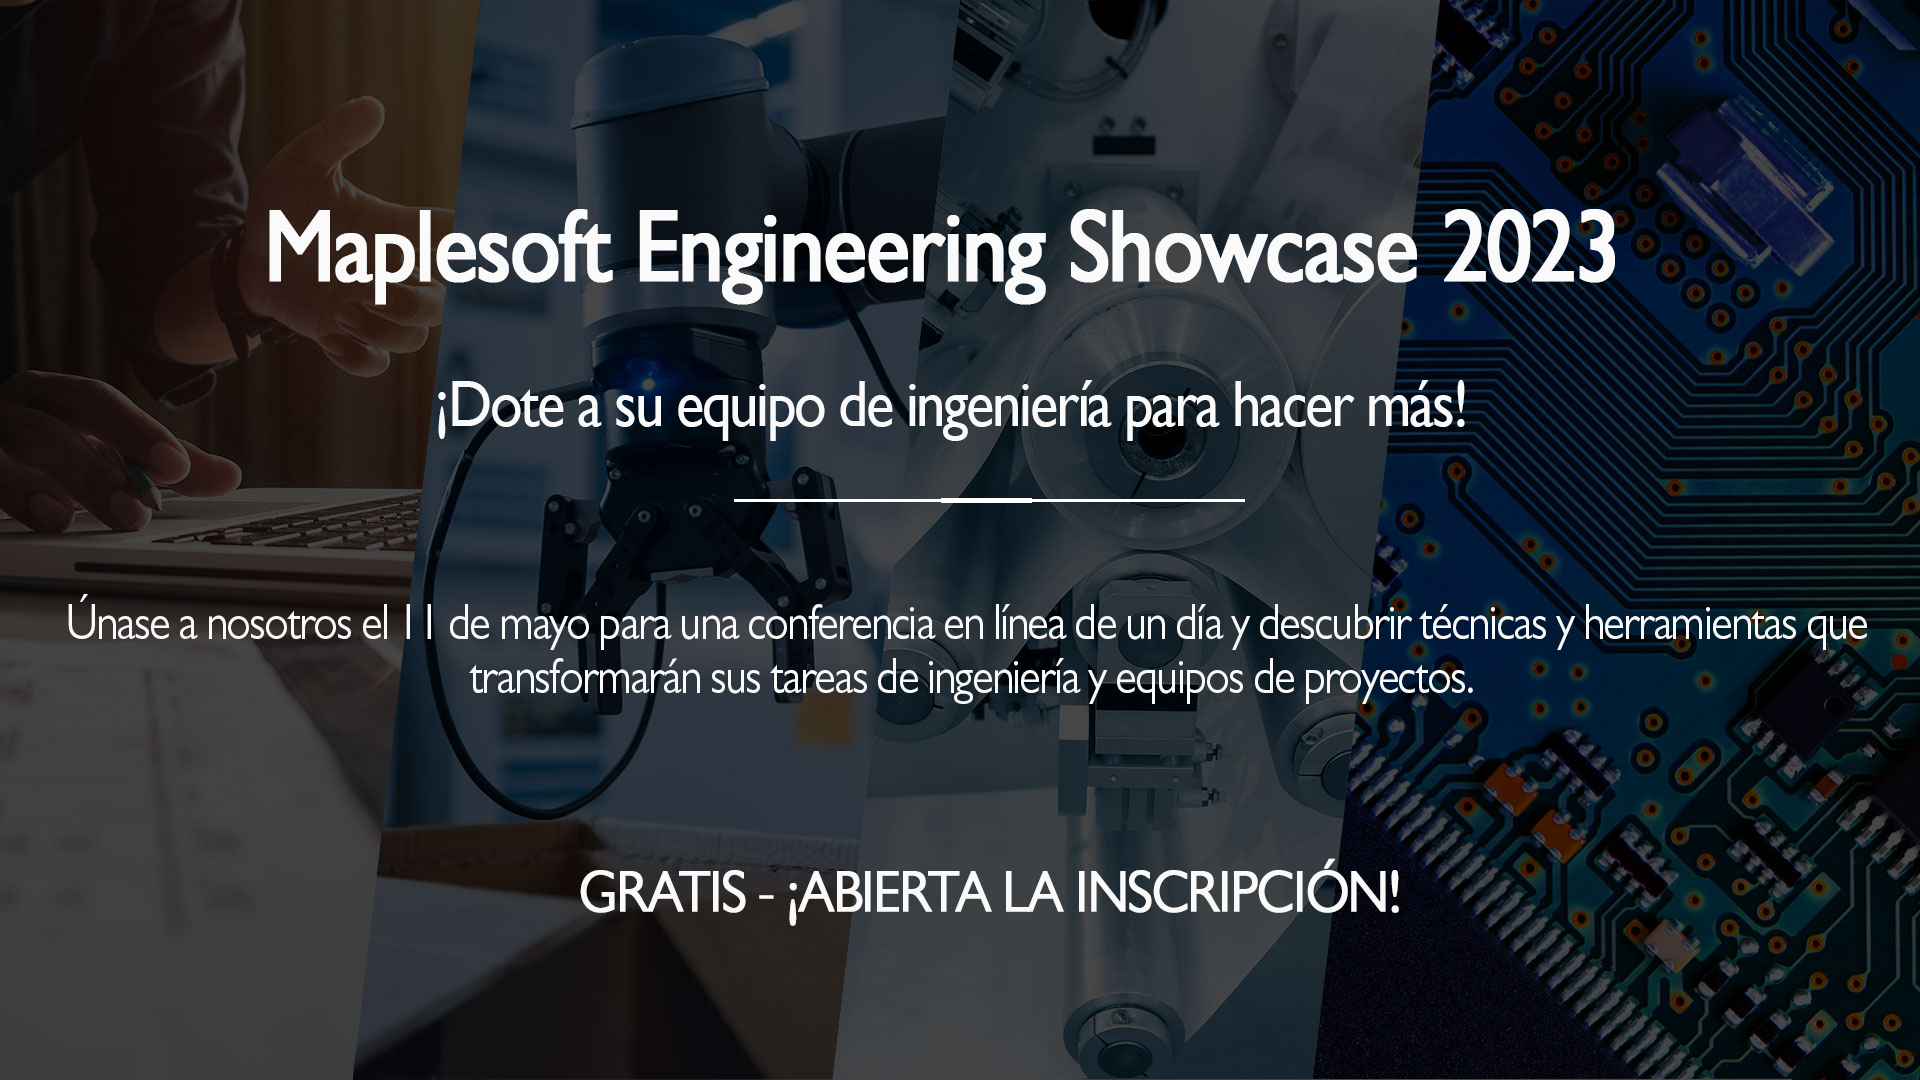 Evento en línea: Maplesoft Engineering Showcase 2023 - 11 mayo